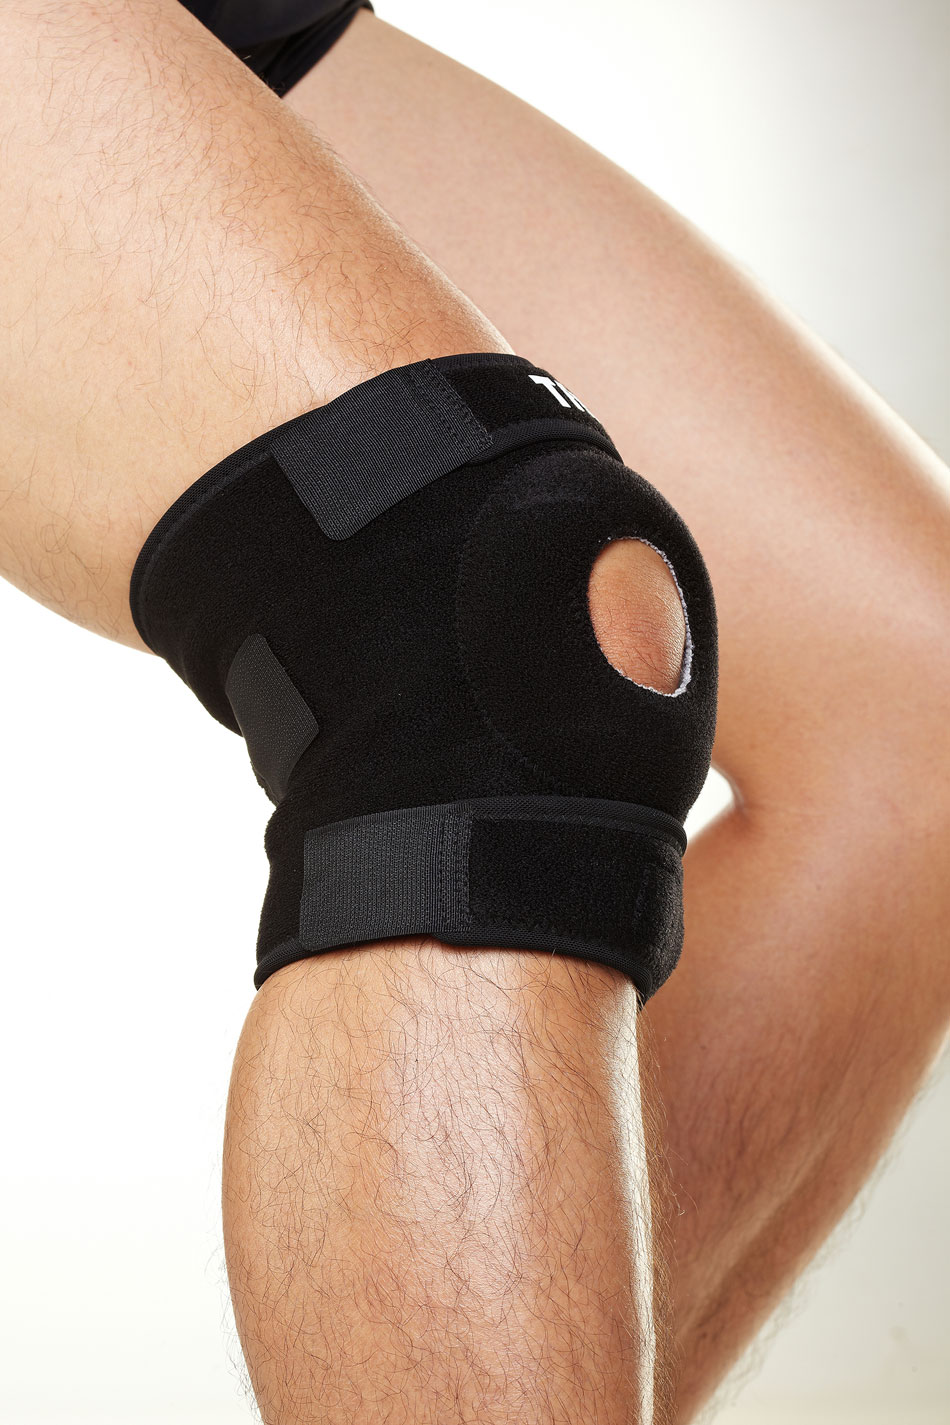 HJ-1102 加压型膝关节束带